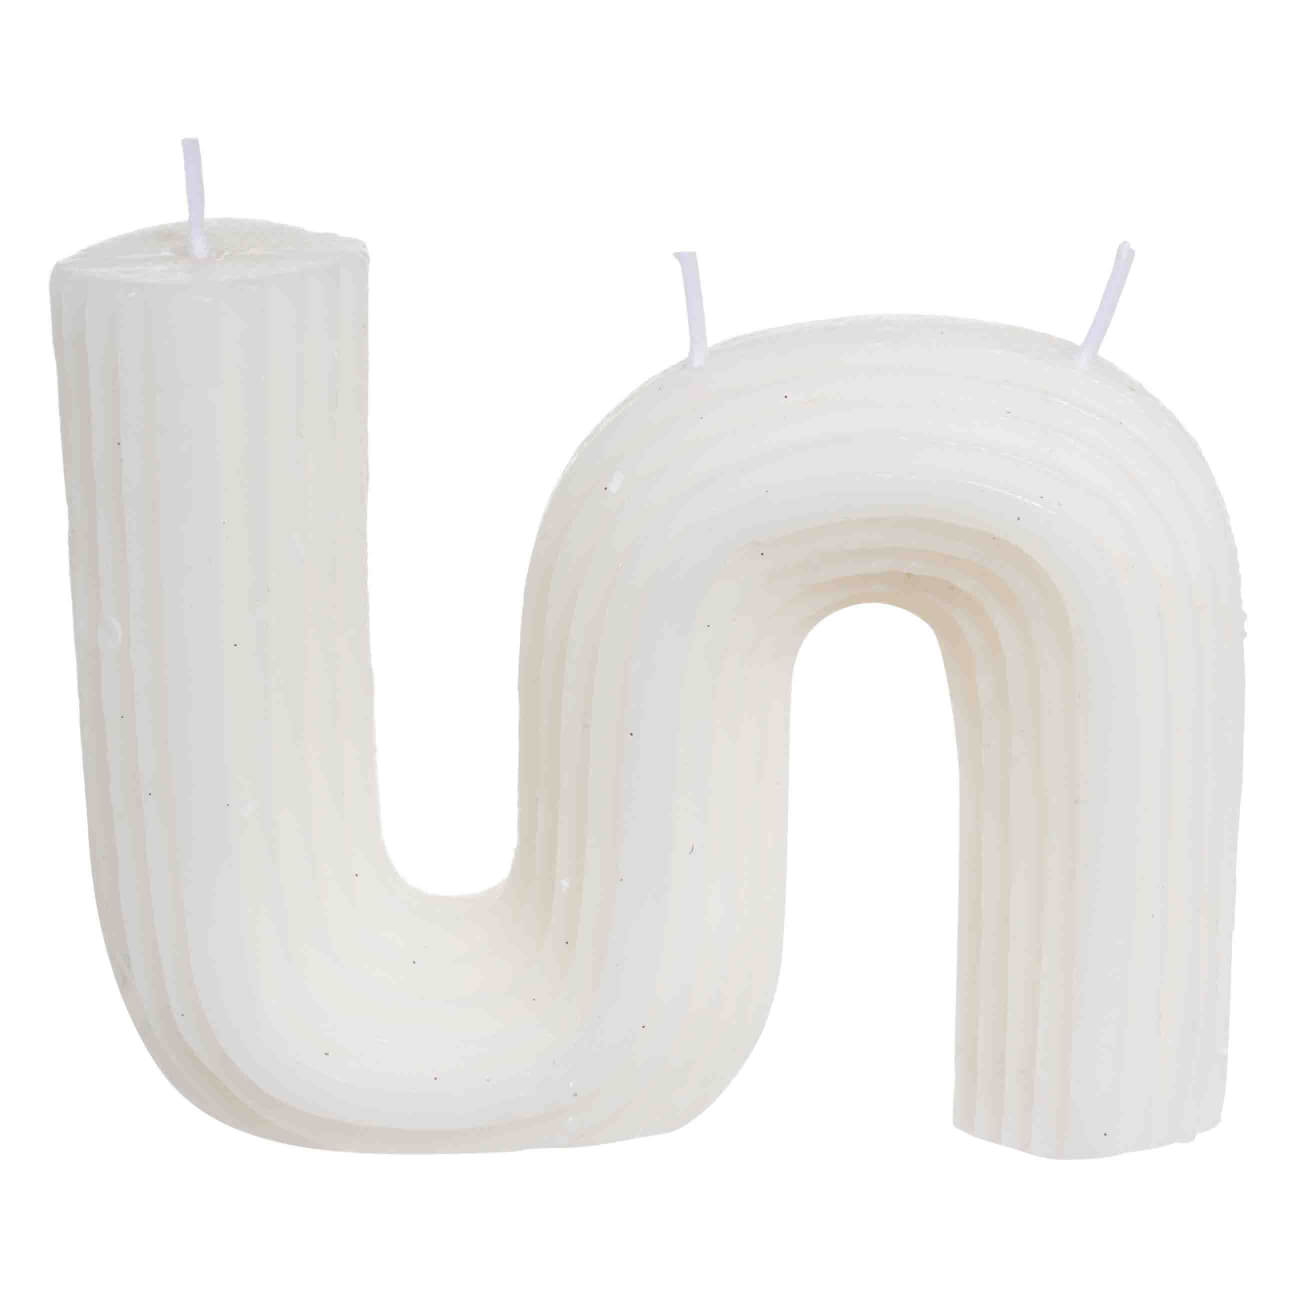 Свеча, 9 см, рифленая, белая, Зигзаг, Ribbed candle свеча фигурная влюбленные 12 см белая